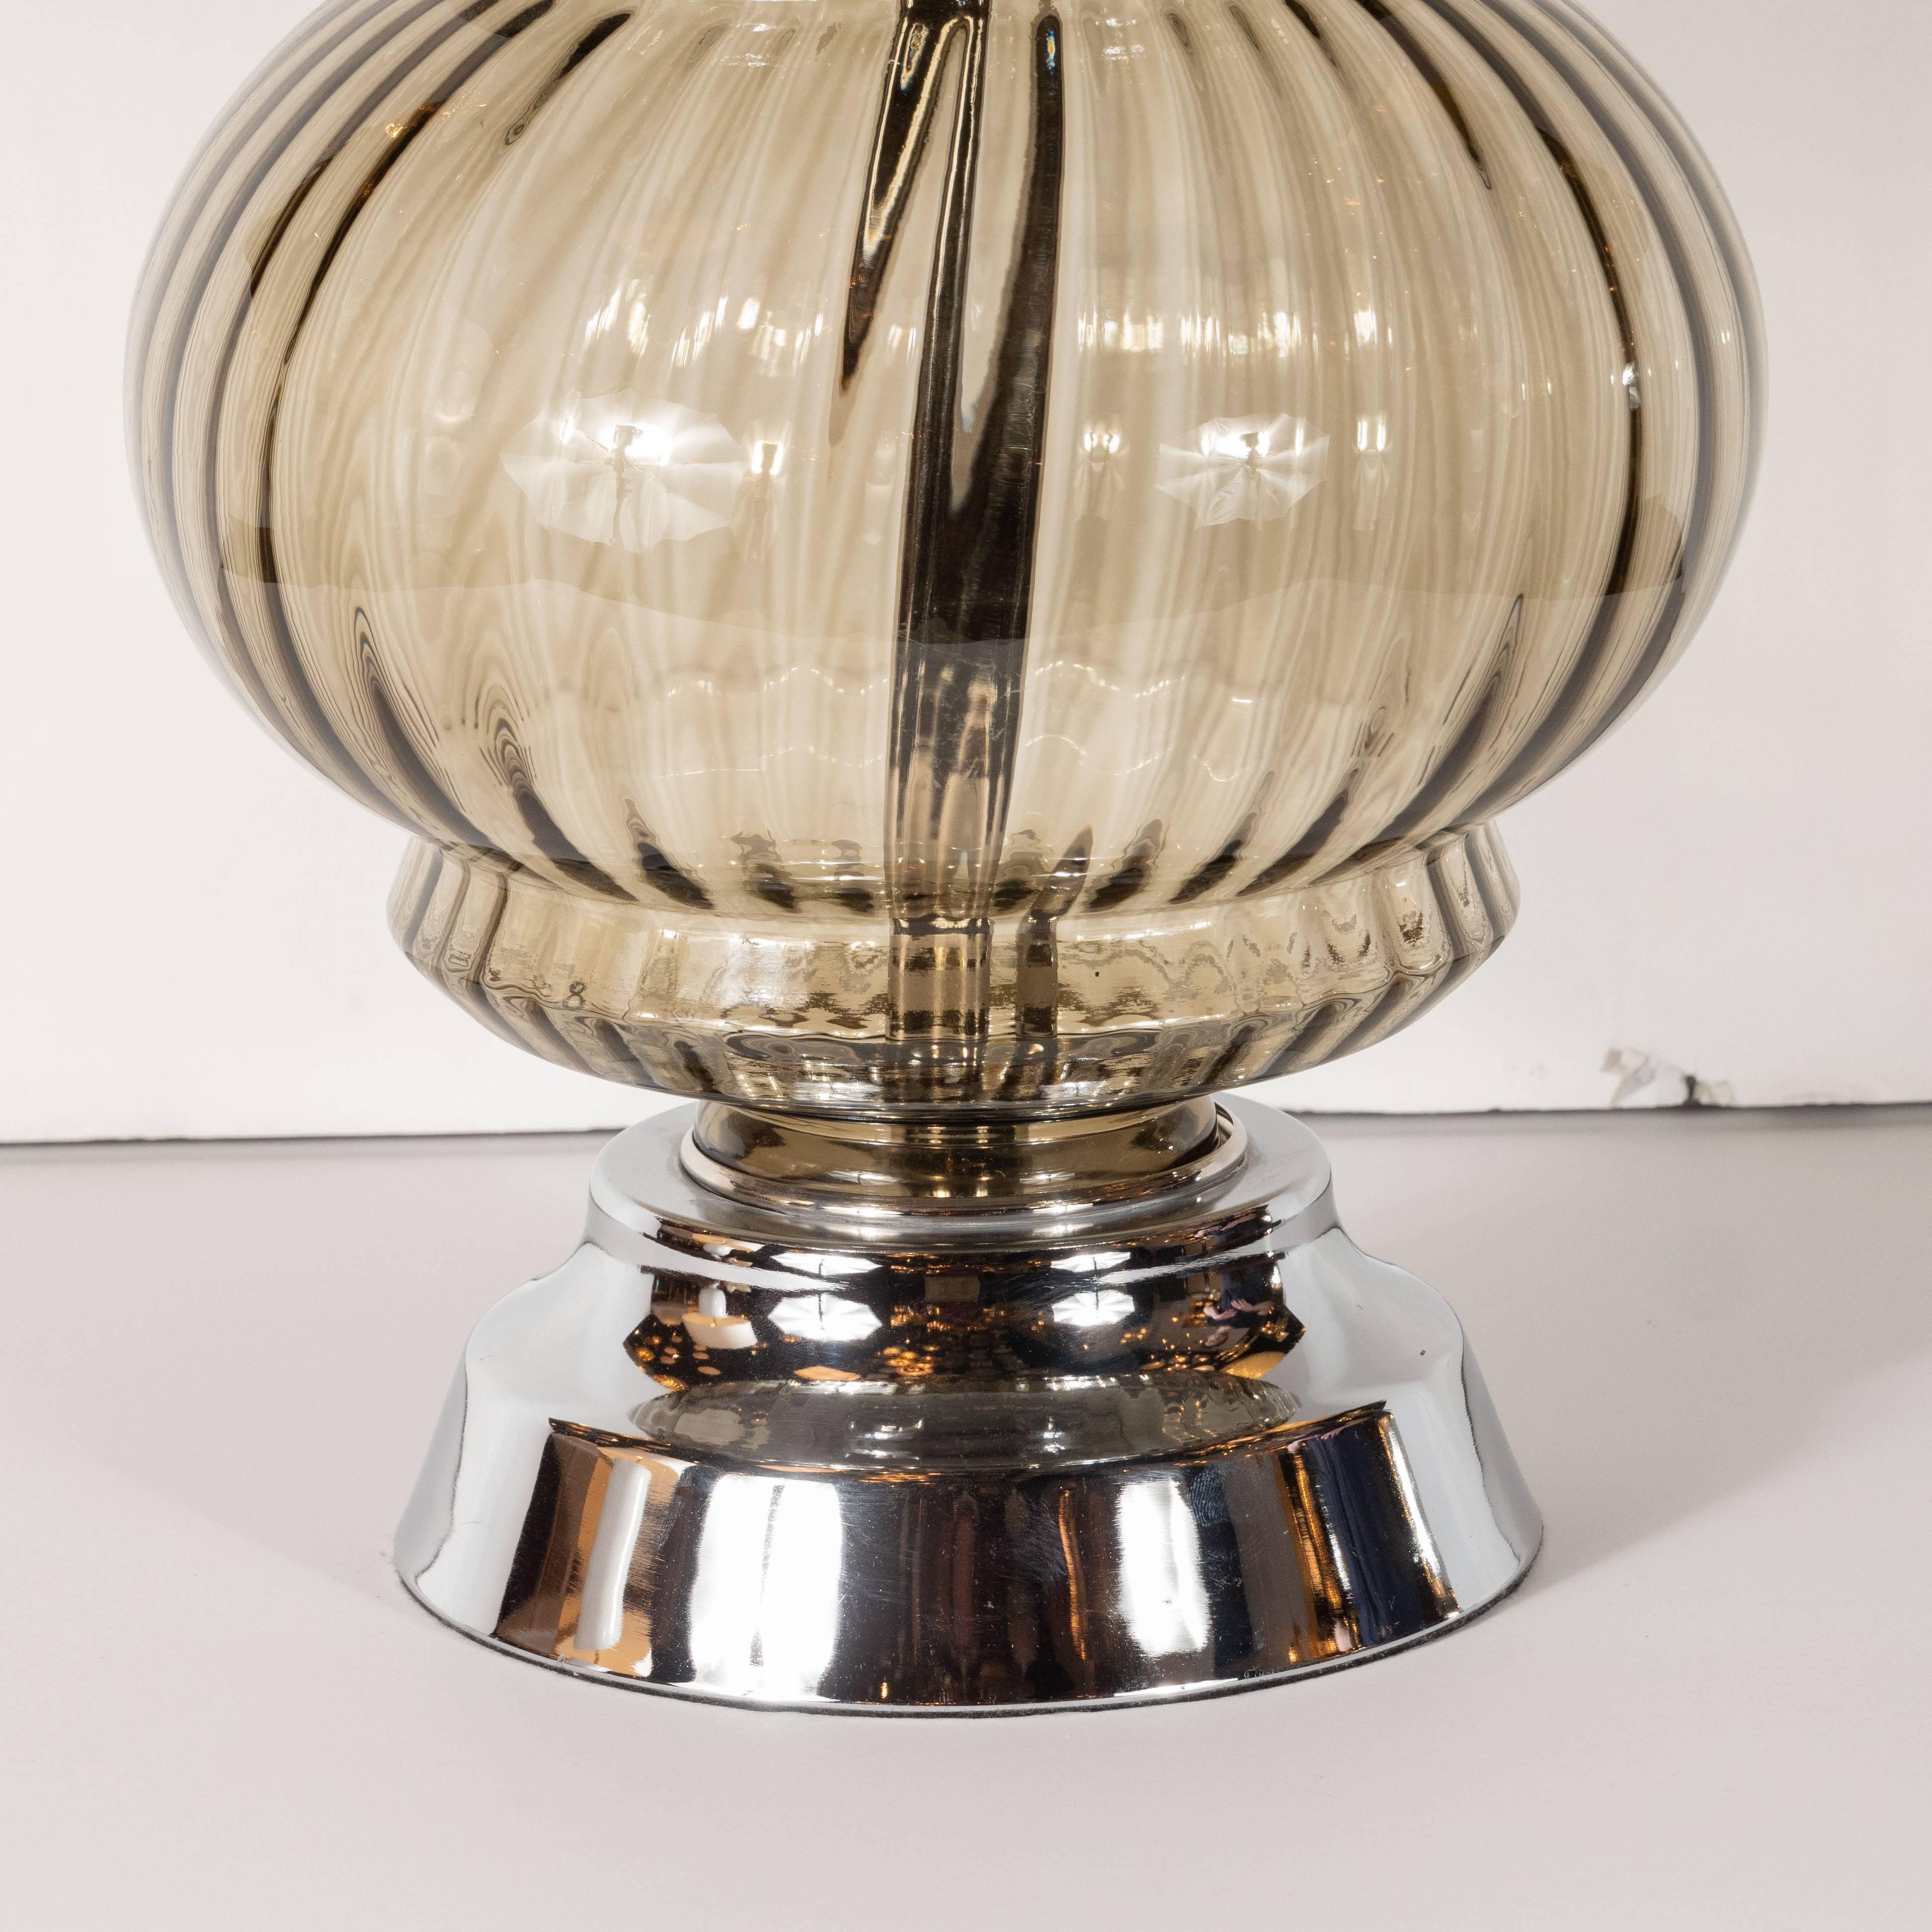 Cette élégante lampe de table de style Mid-Century Modern a été réalisée aux États-Unis, vers 1960. Il présente un corps en verre orbital nervuré avec une indentation étagée sur le dessus et le dessous, le tout en verre fumé translucide. Le corps